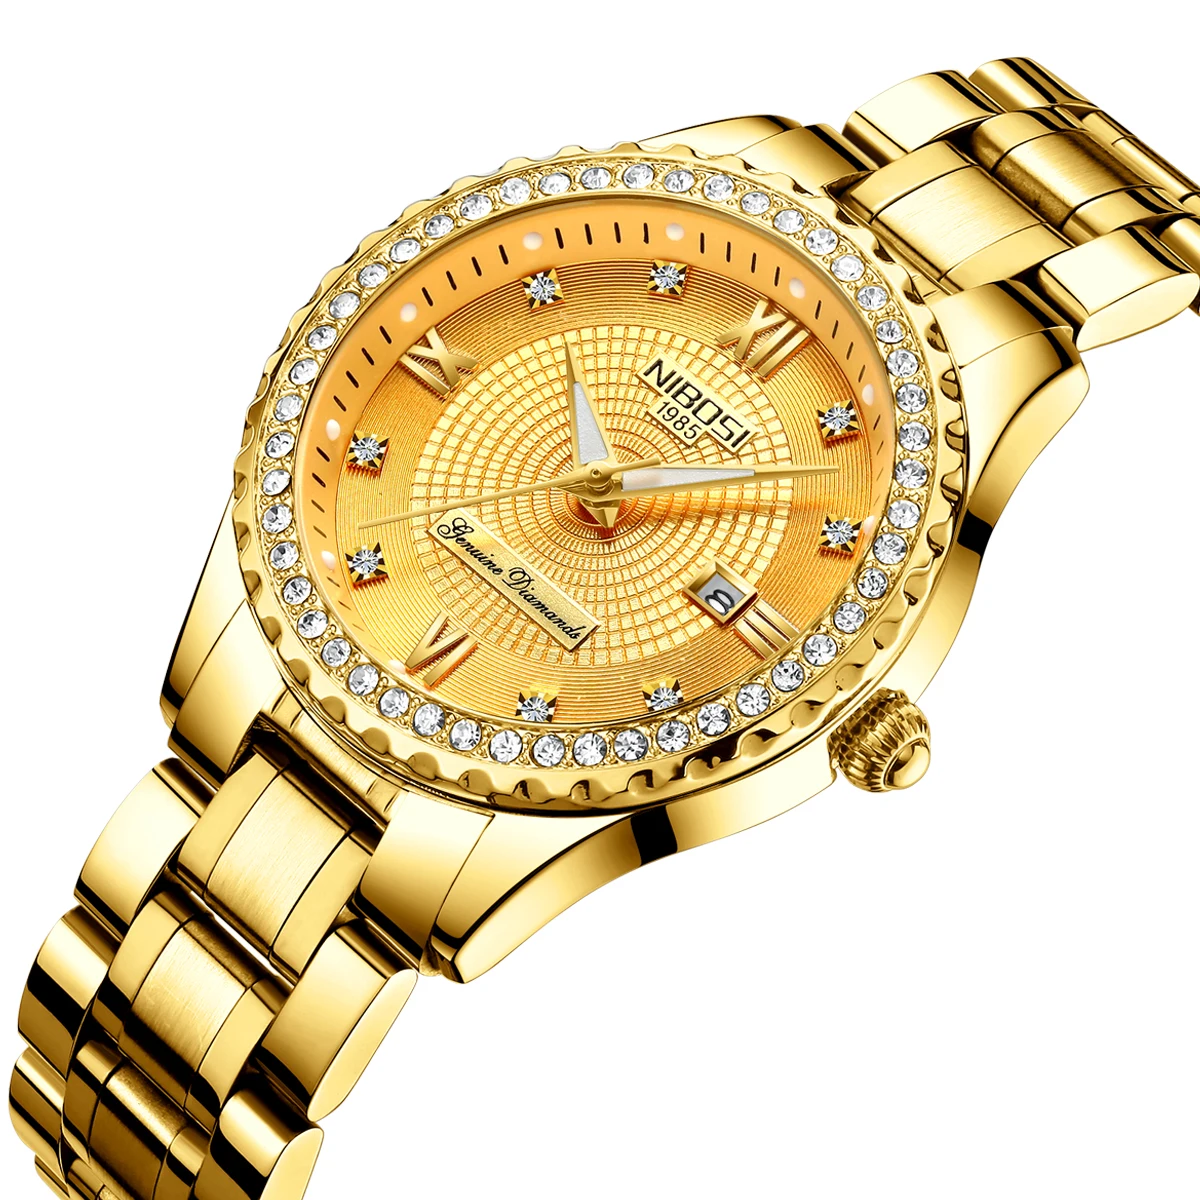 

Free Shipping NIBOSI 2357 Women Watches Top Brand Luxury Gold Watch Fashion Quartz Watch Business Reloj Waterproof Wristwatch